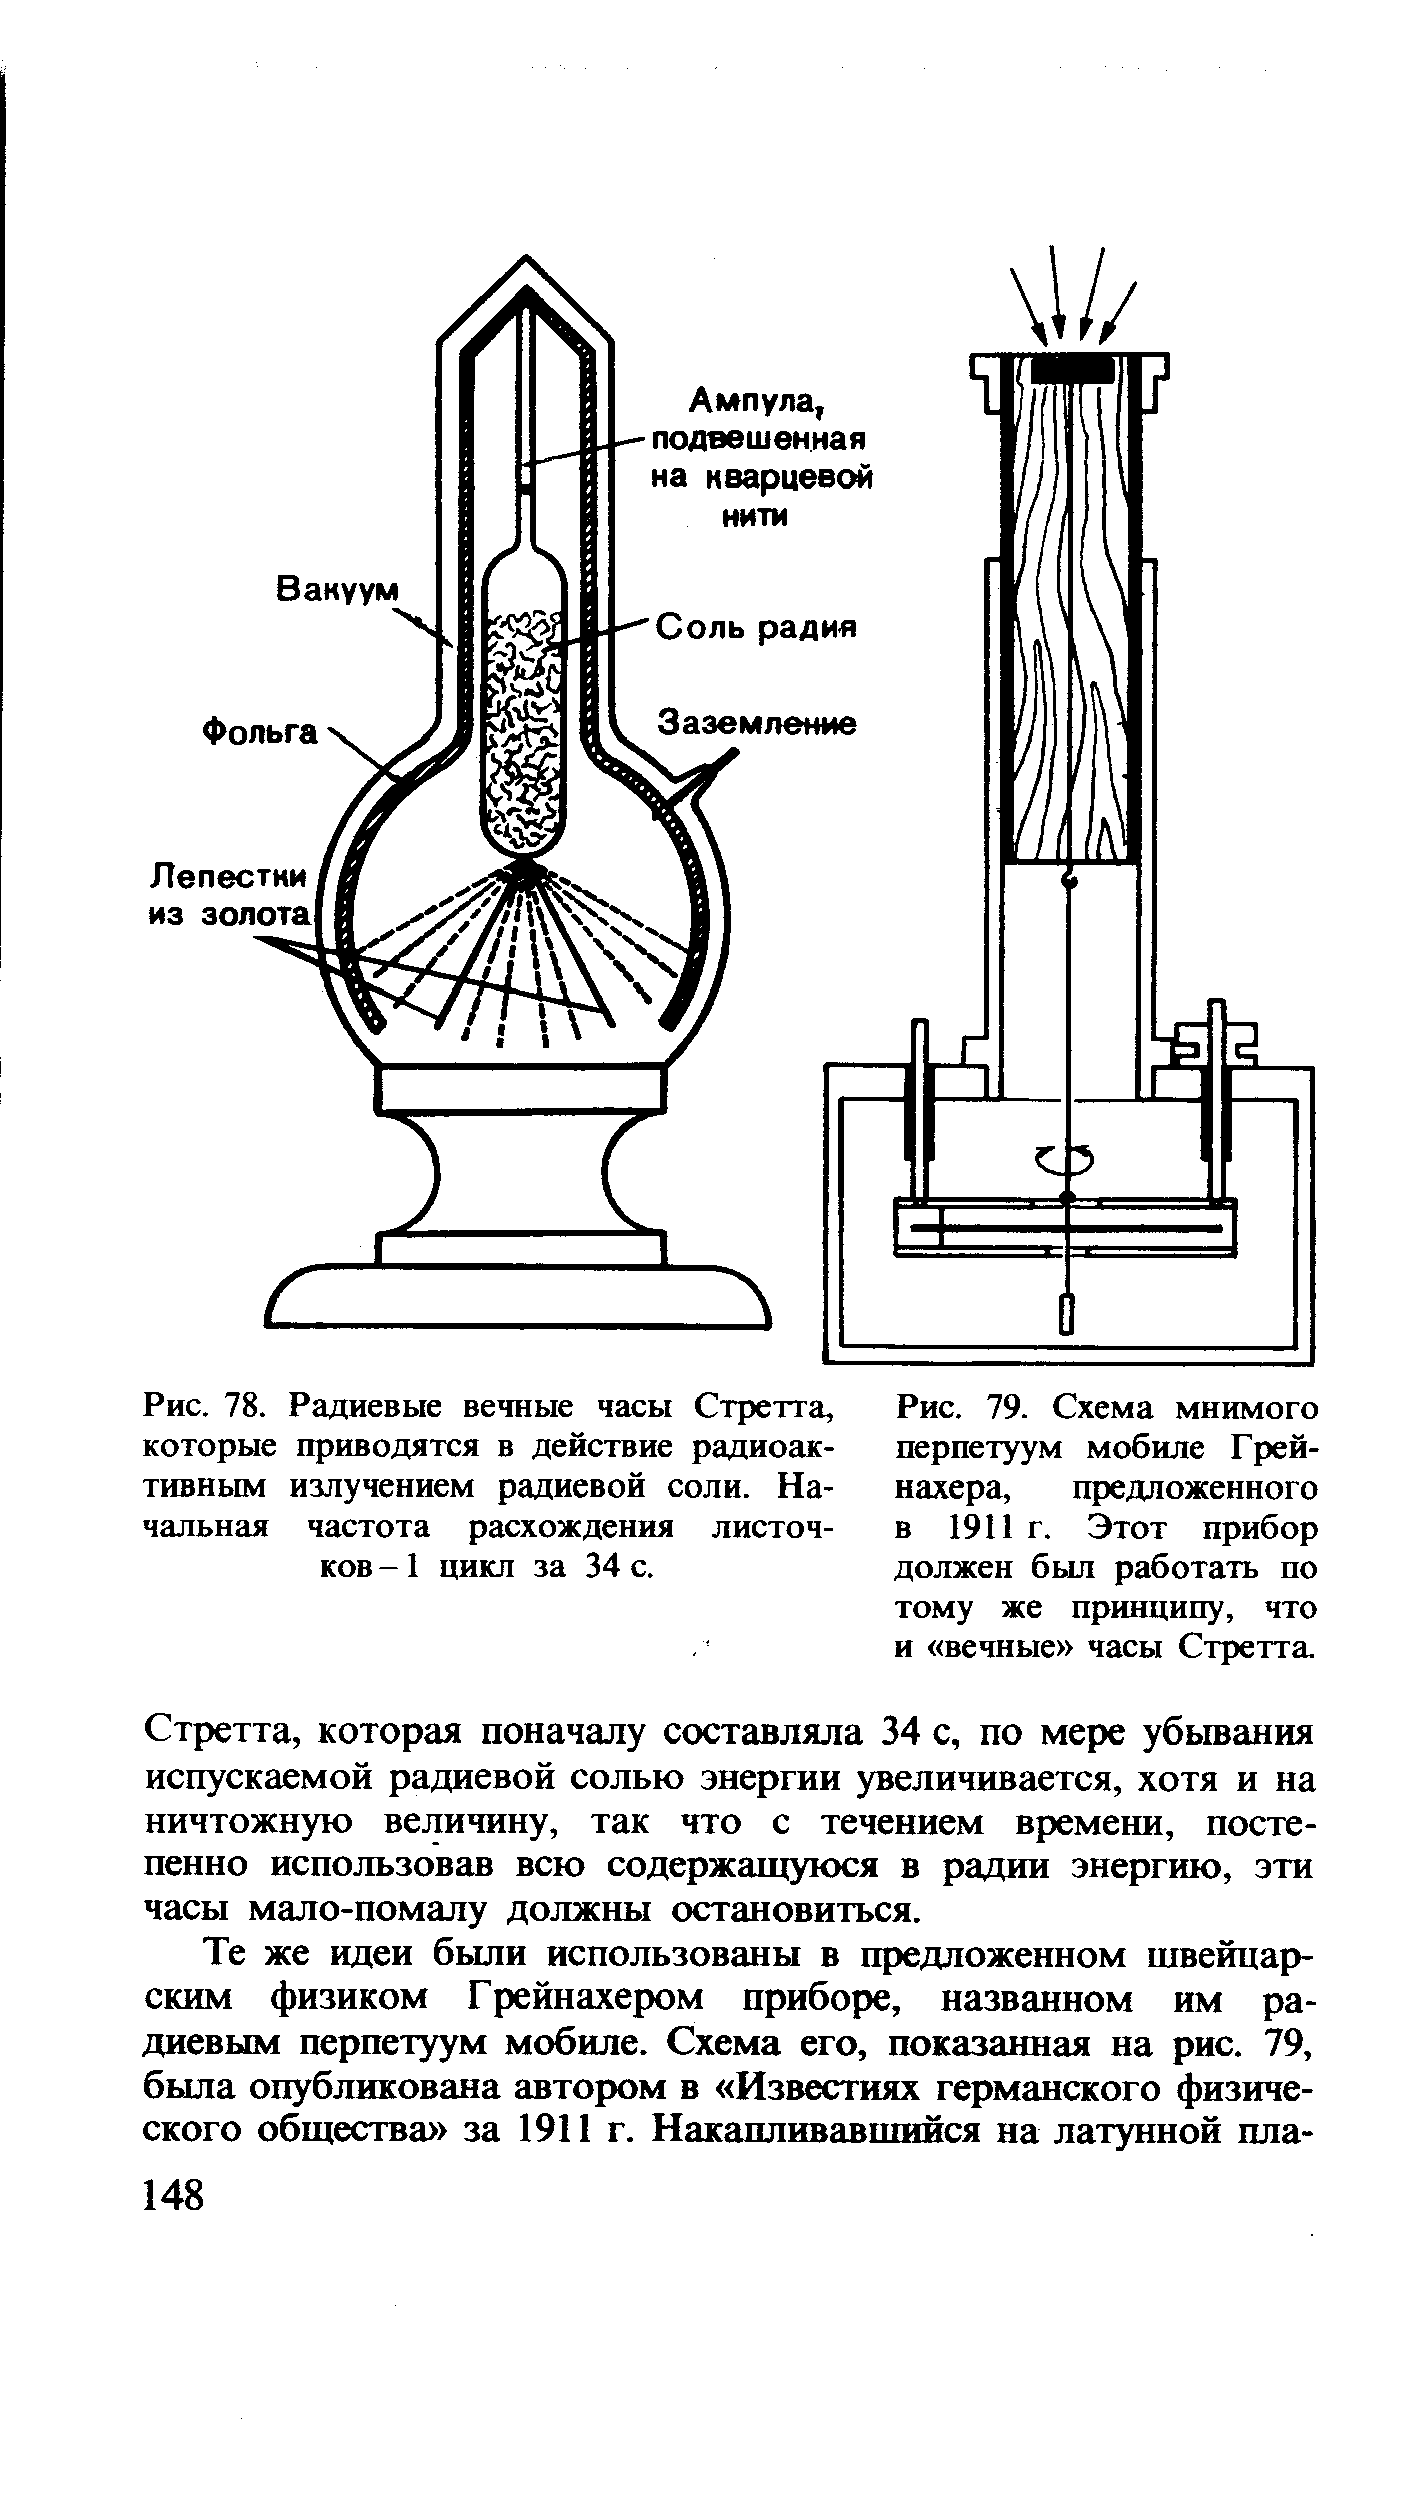 Рис. 79. Схема мнимого перпетуум мобиле Грей-нахера, предложенного в 1911 г. Этот прибор должен был работать по тому же принципу, что и вечные часы Стретта
